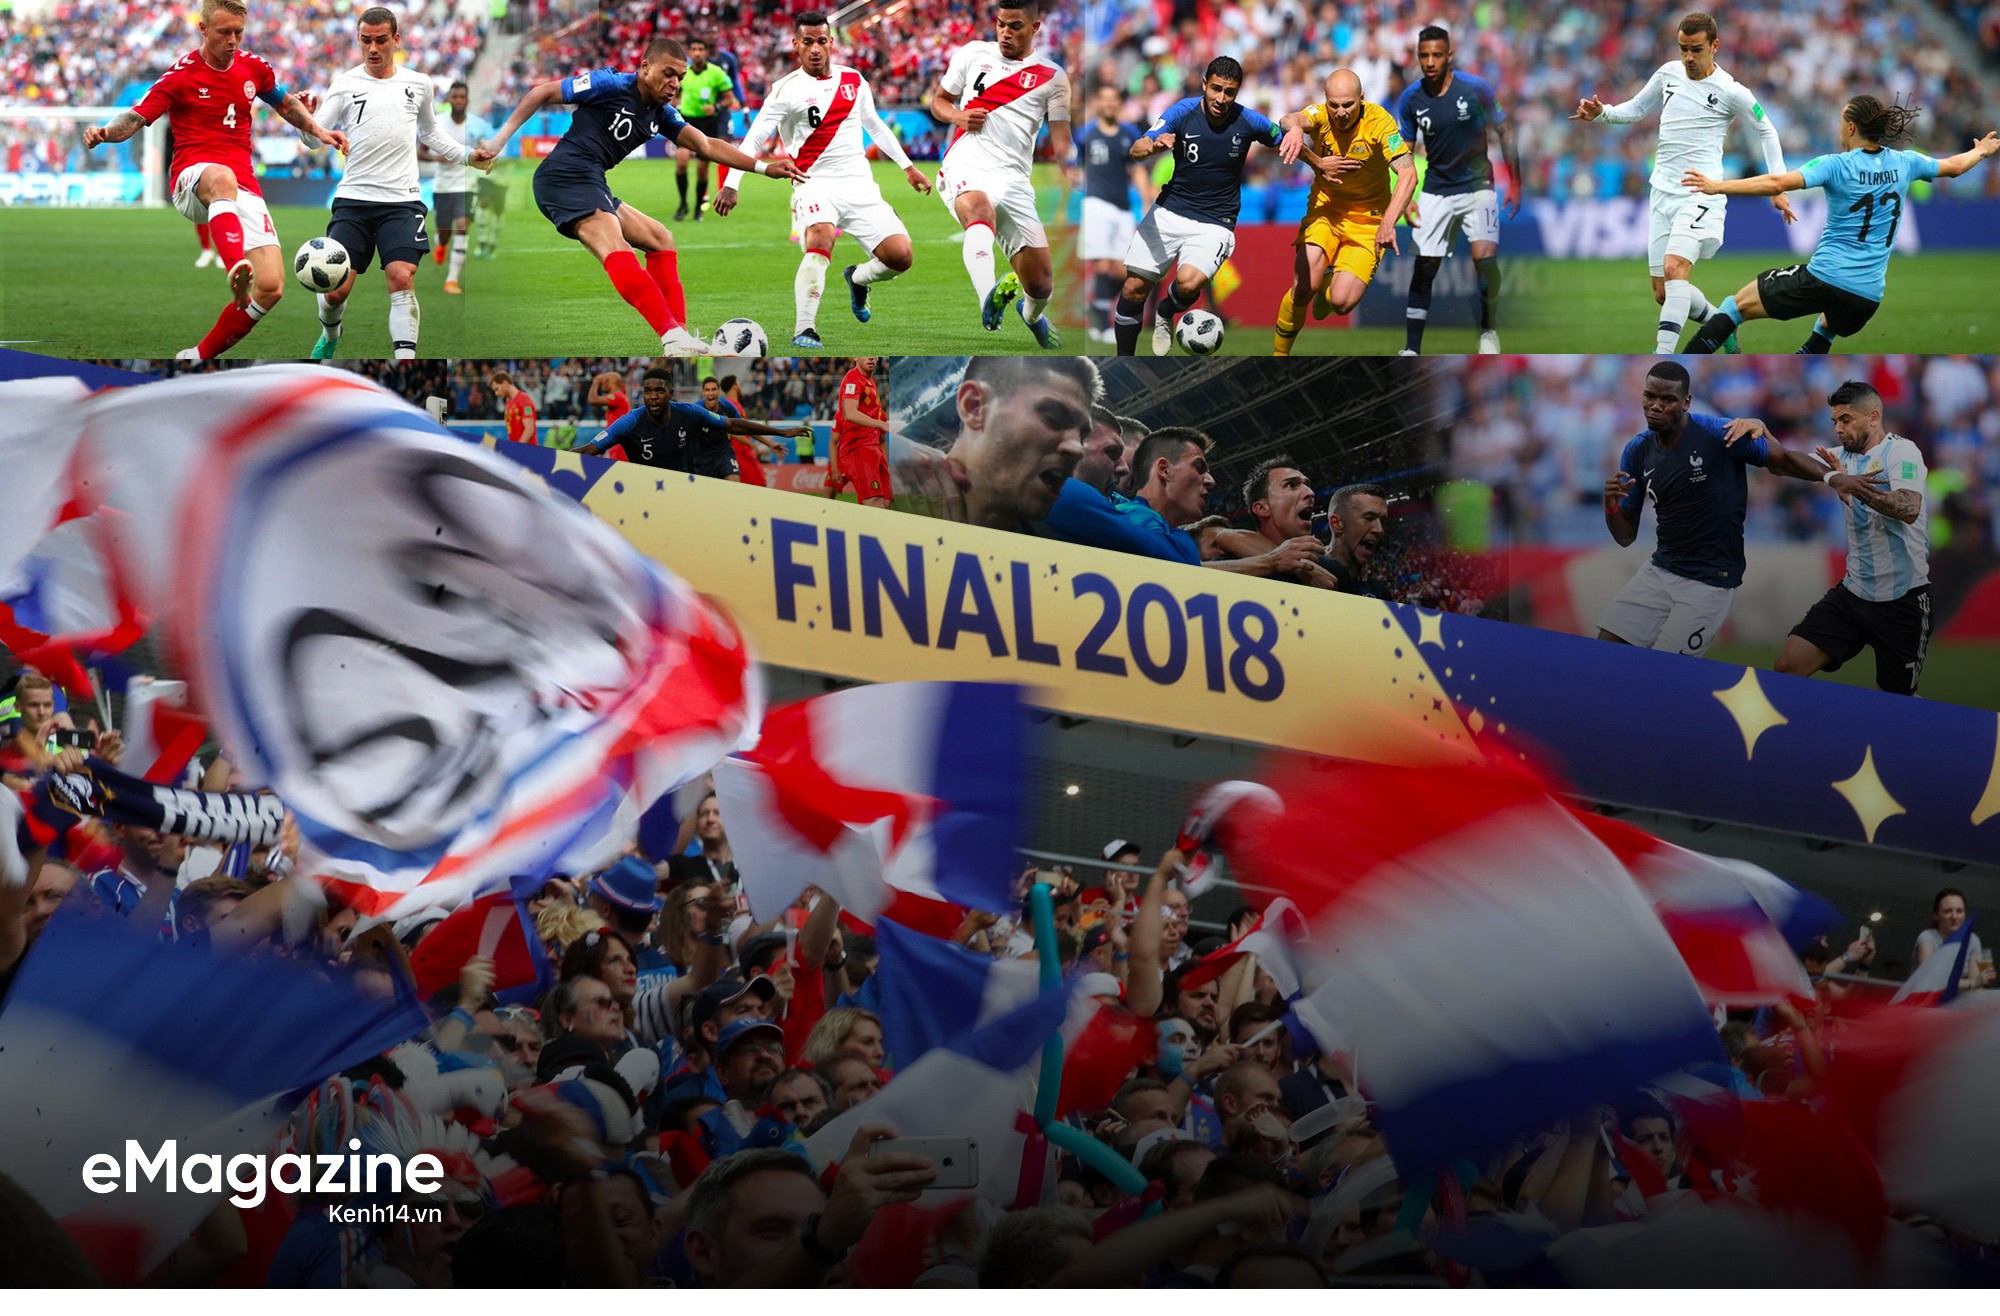 Vô địch World Cup 2018, khởi đầu cho kỷ nguyên vàng nước Pháp - Ảnh 11.